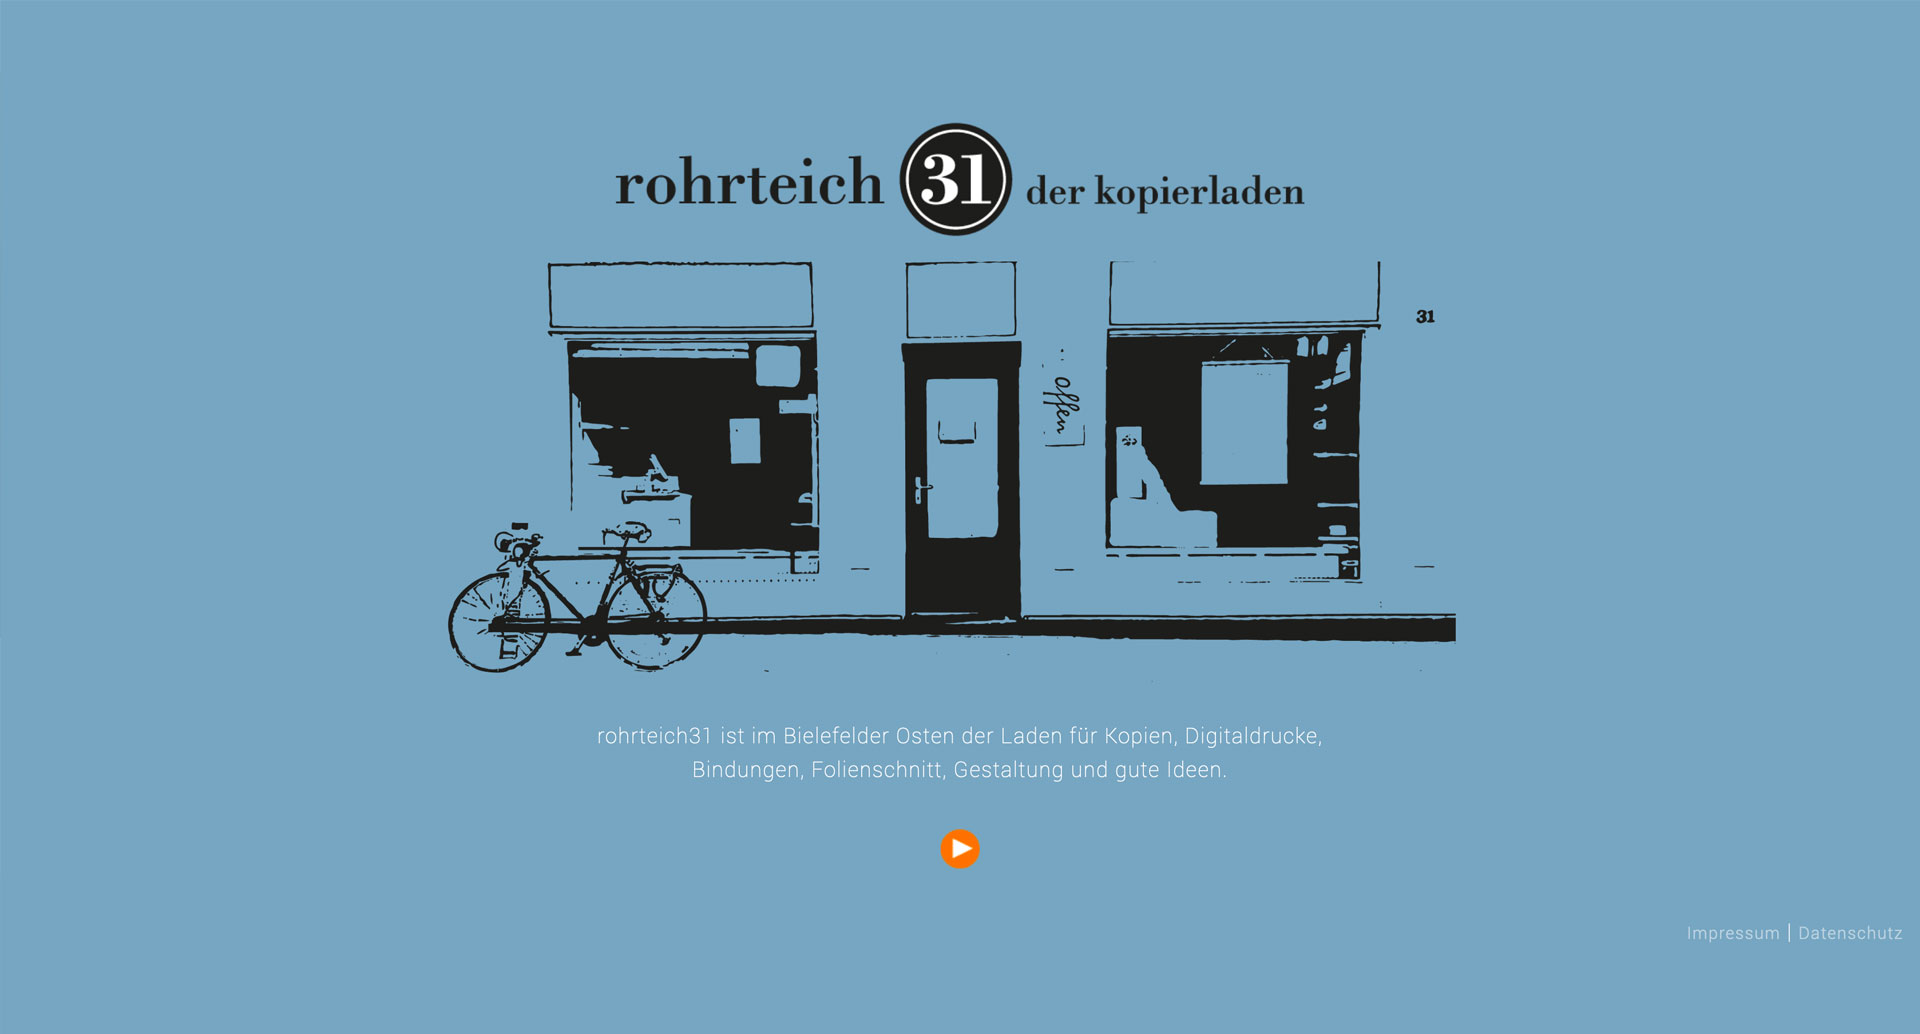 Rohrteich31